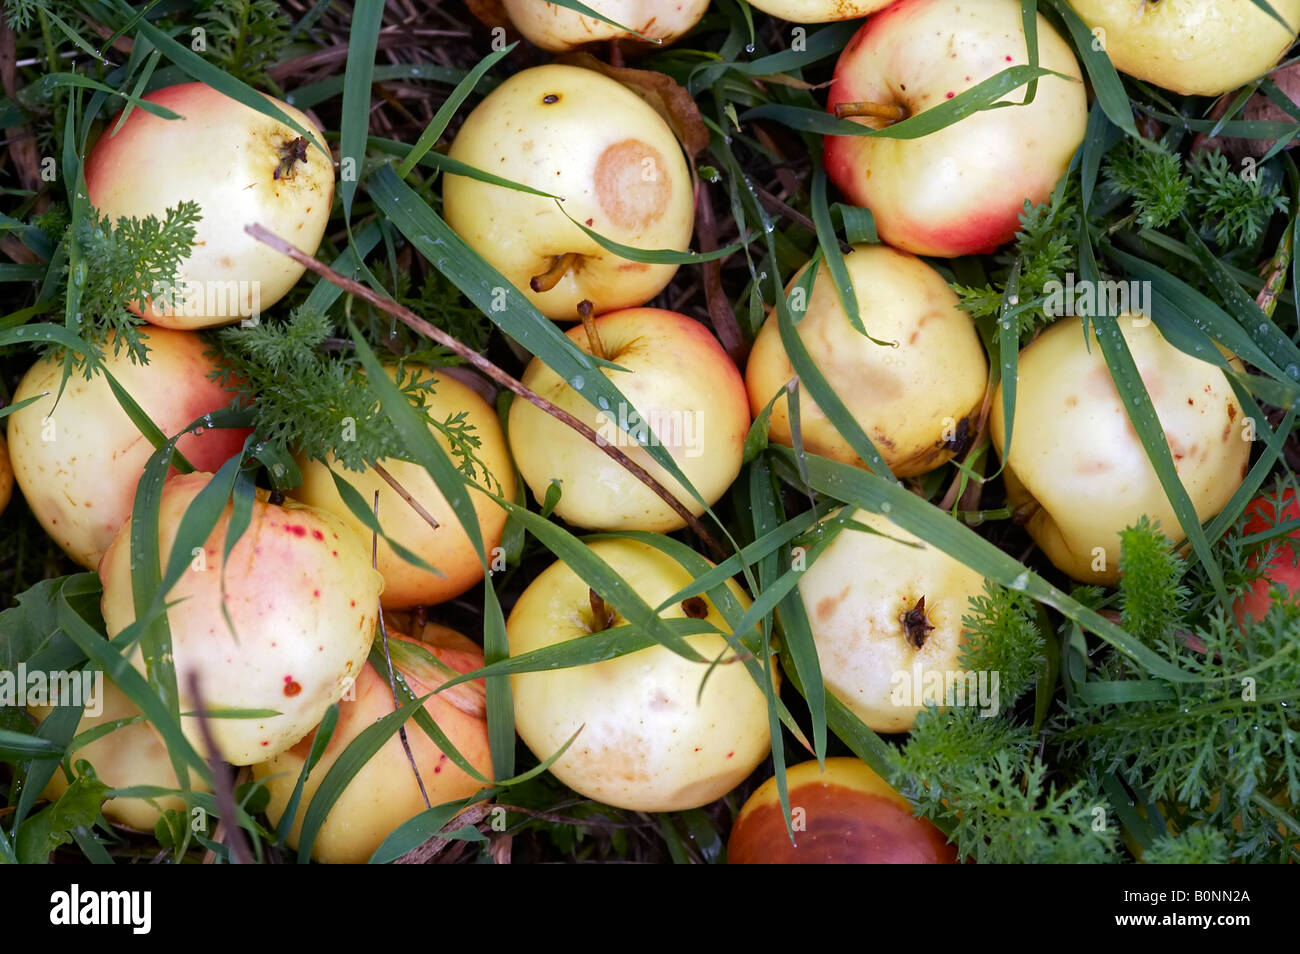 Auttumn tombé pommes à l'herbe Banque D'Images